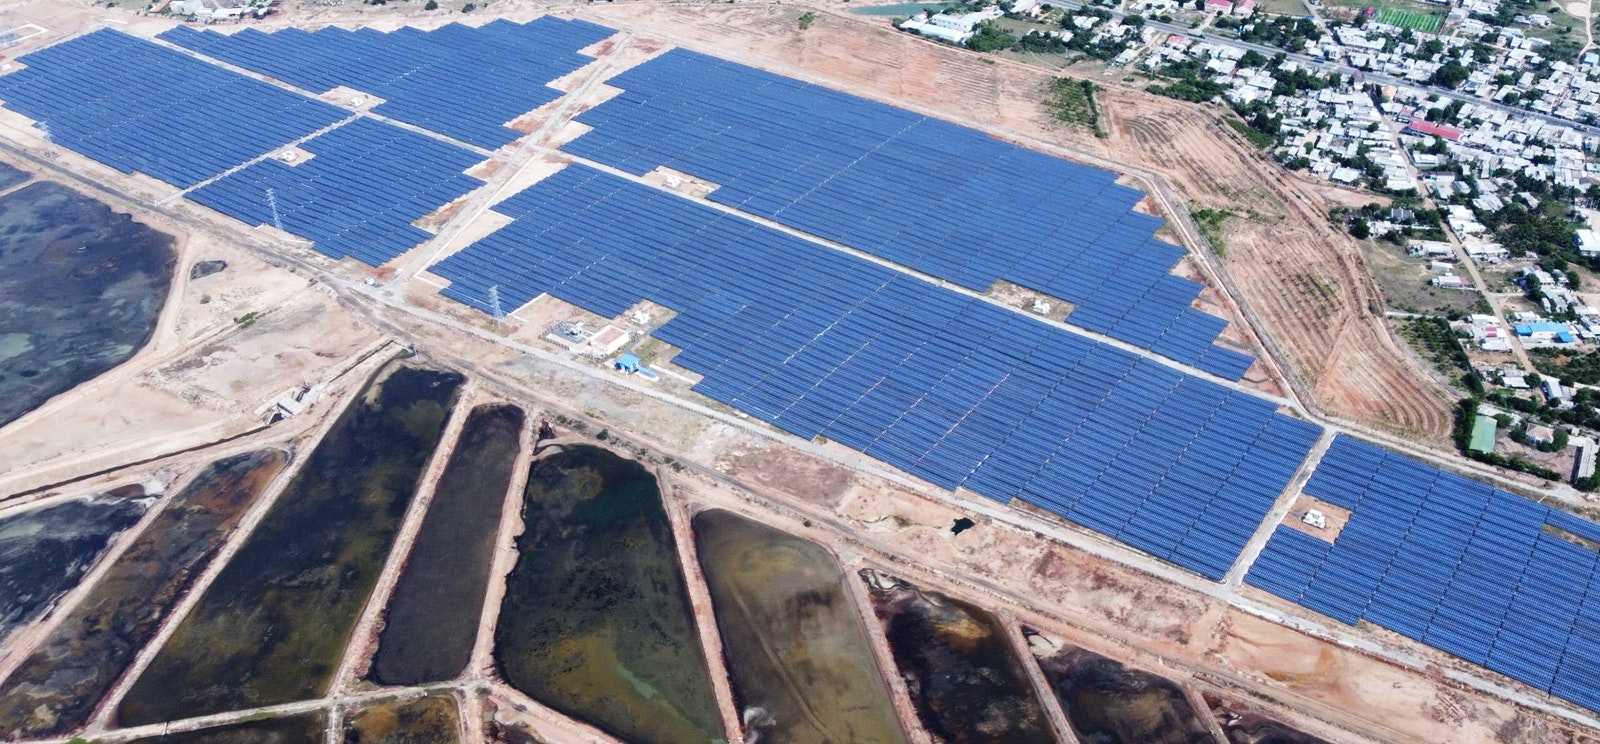 Solar panels renewables project